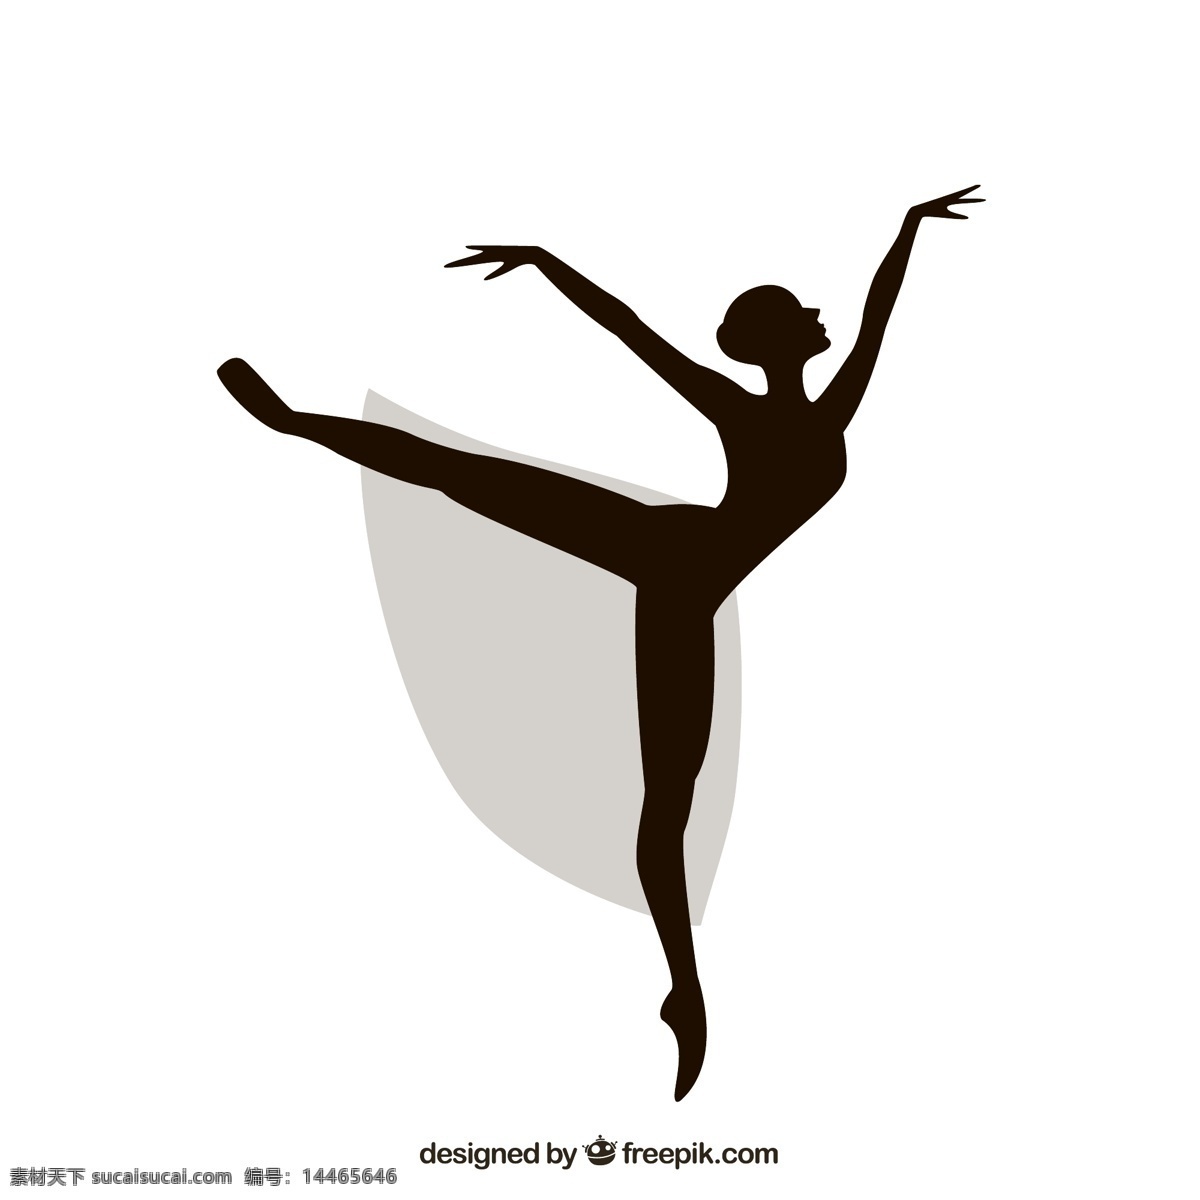 芭蕾舞 女郎 剪影 矢量图 舞蹈 女子 欧洲 古典舞蹈 脚尖舞